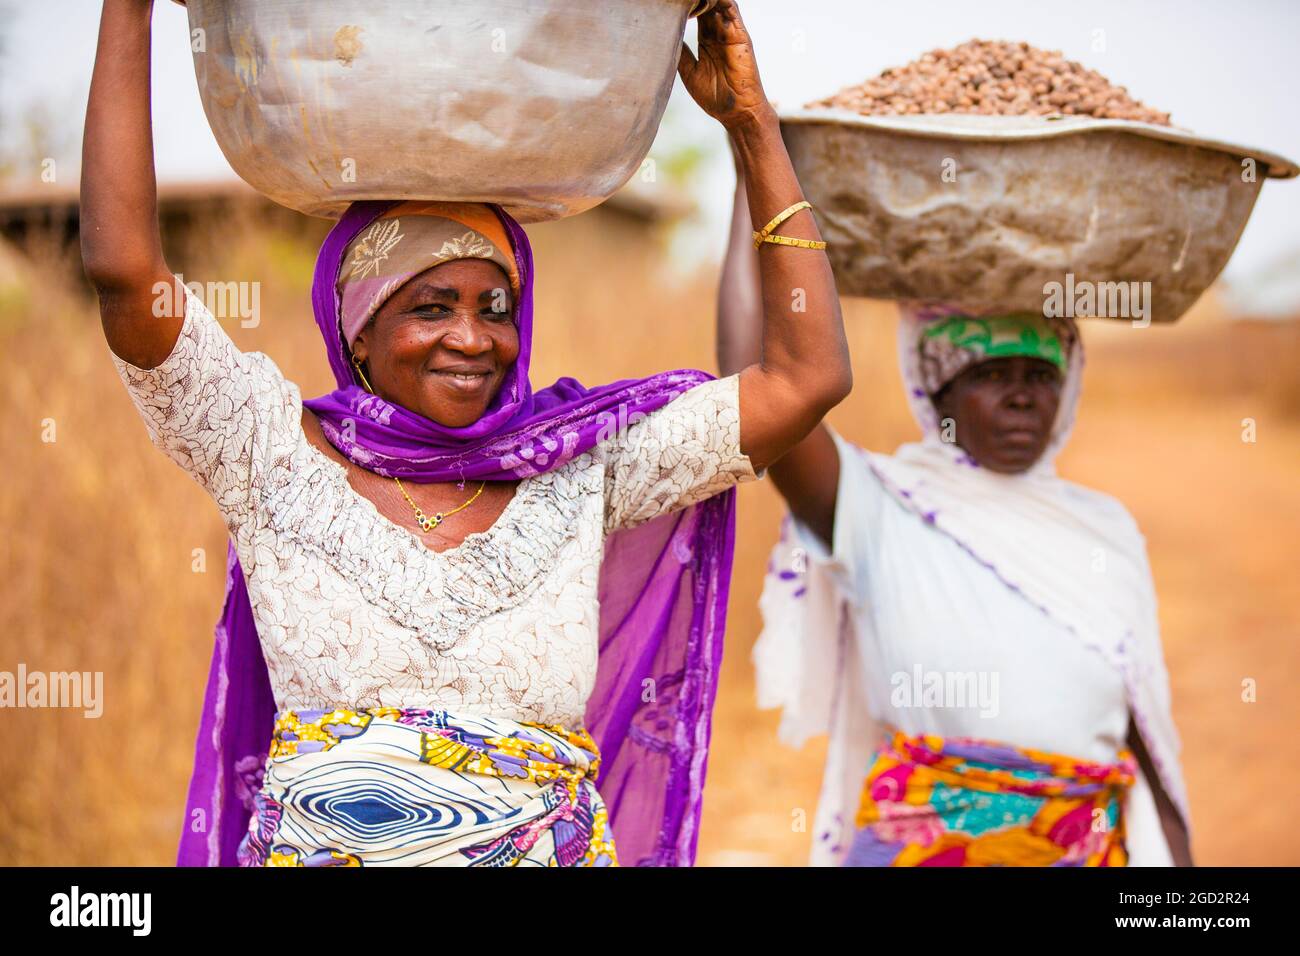 L'USAID et l'Alliance mondiale Shea s'associent pour relier les femmes des villages d'Afrique de l'Ouest au marché mondial ca. 21 février 2018 Banque D'Images